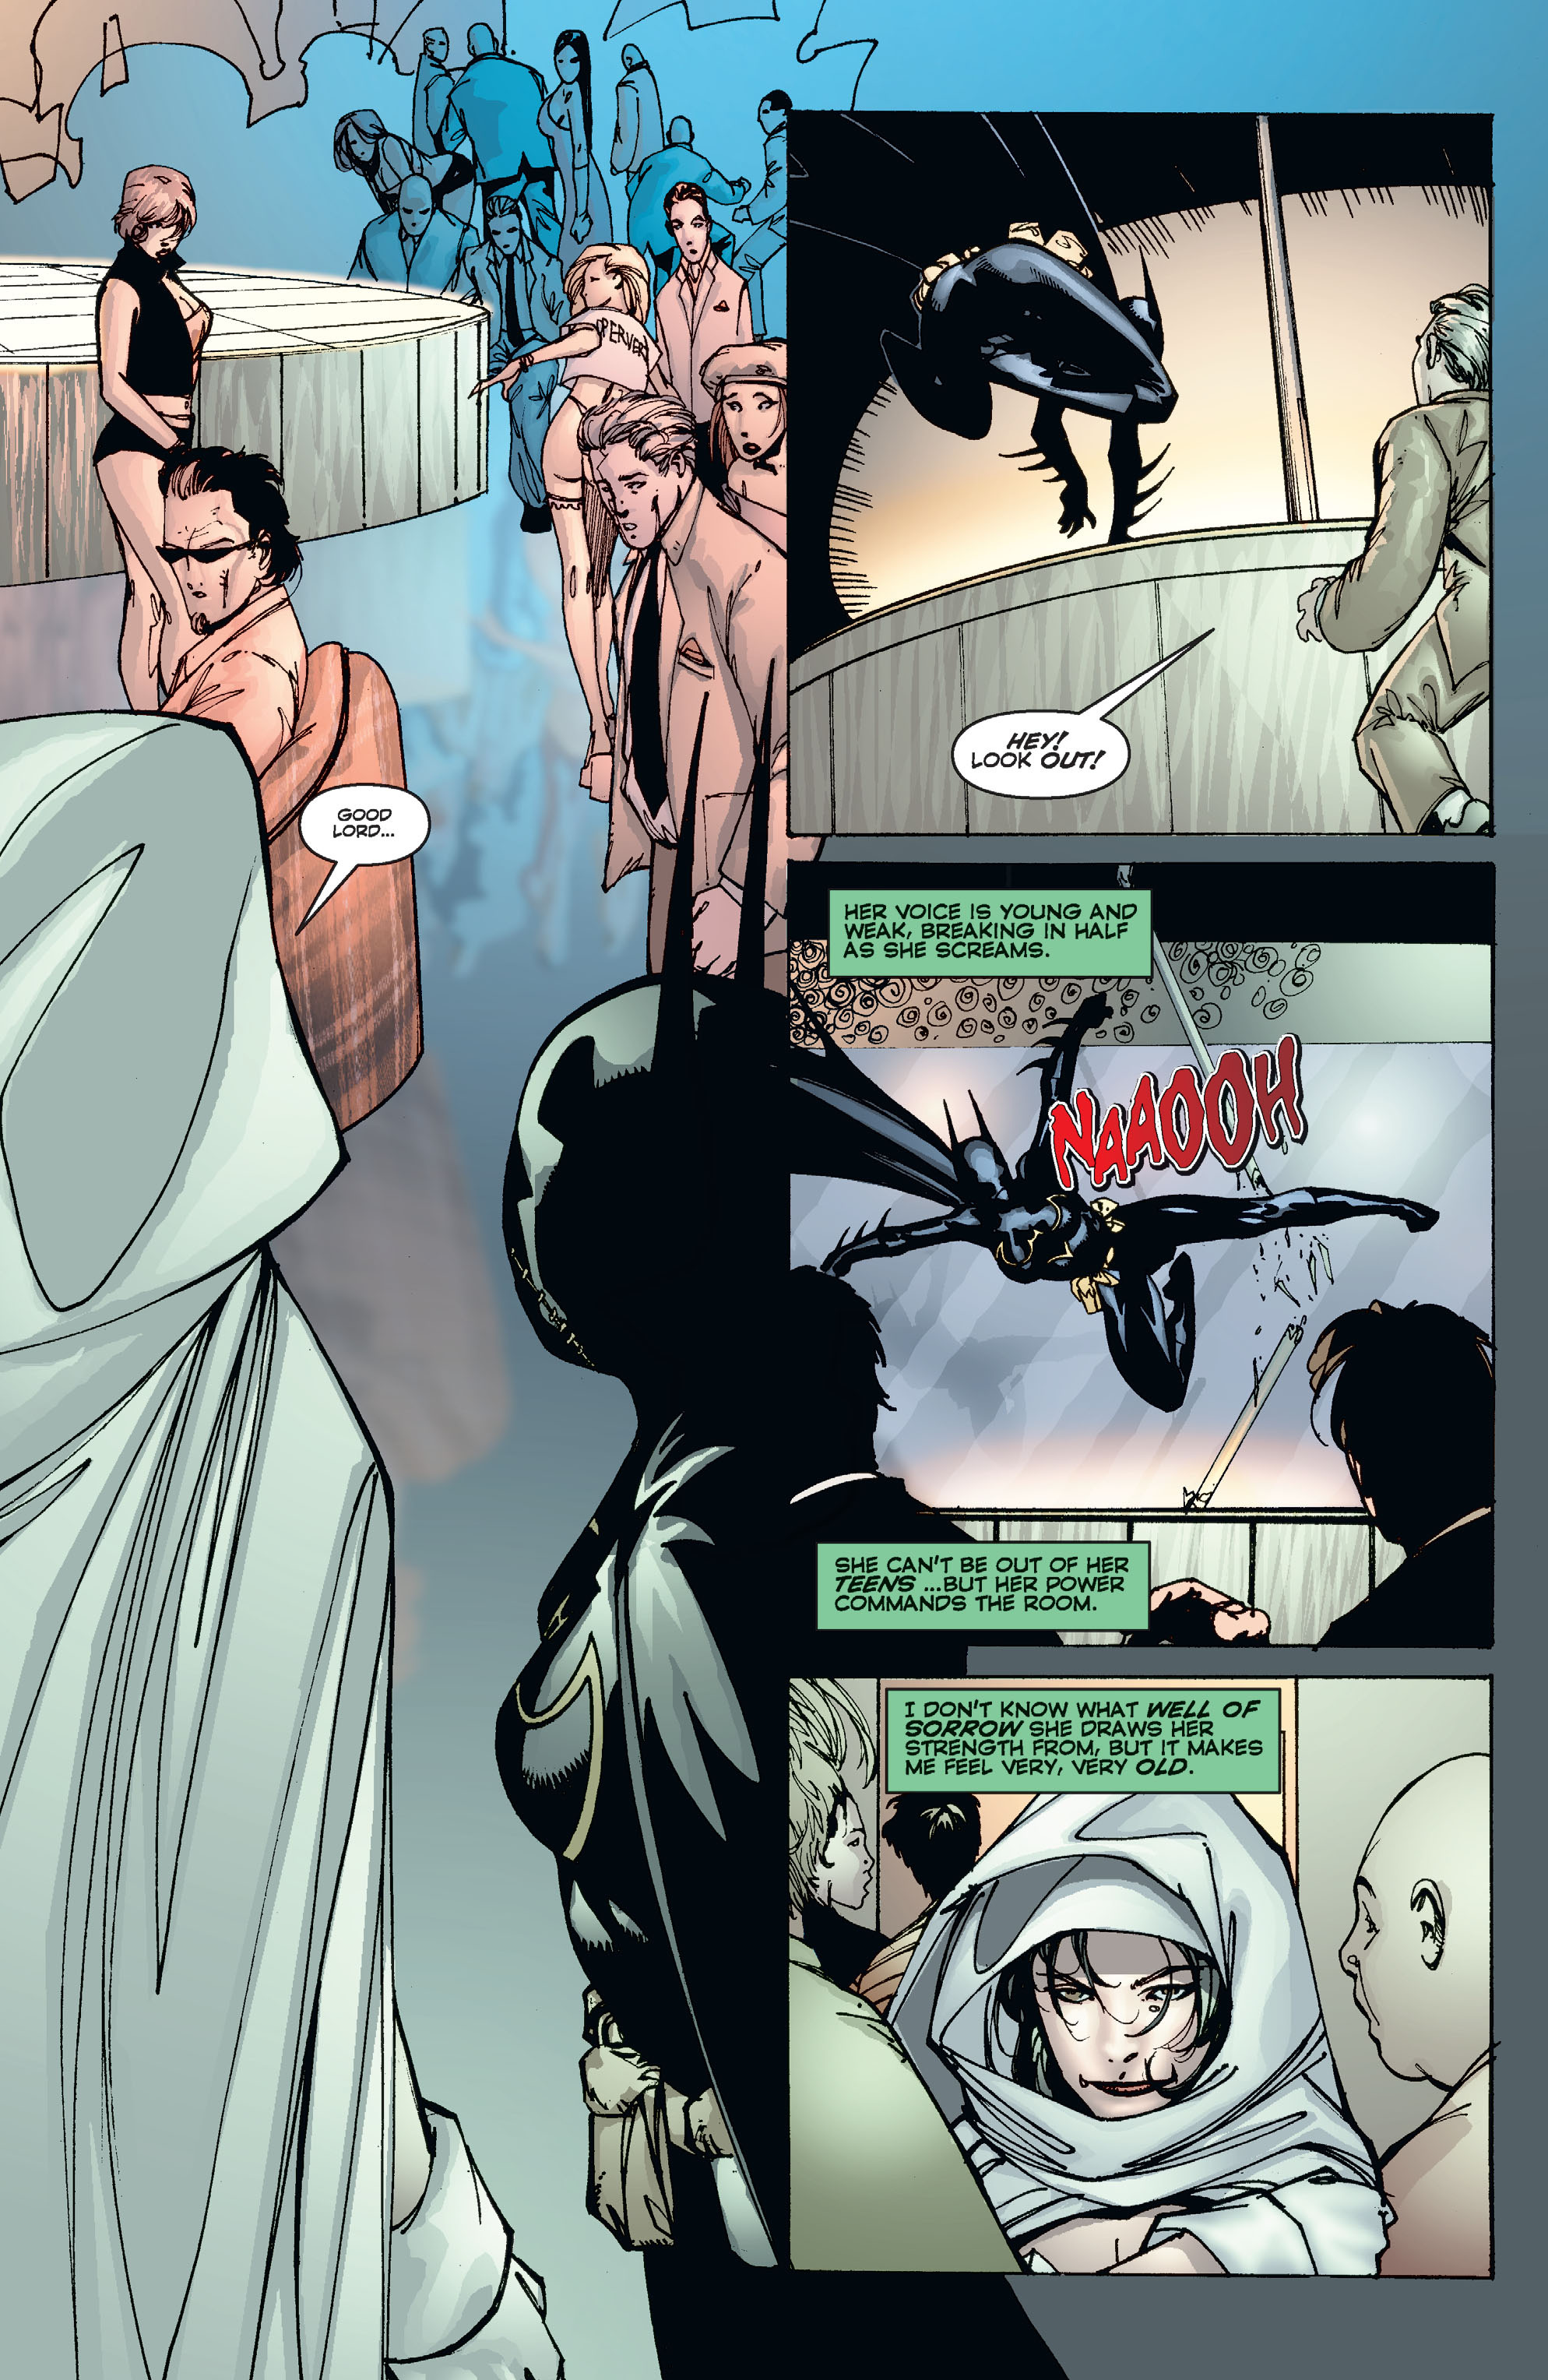 DC Comics/Dark Horse Comics: Justice League Full #1 - English 326